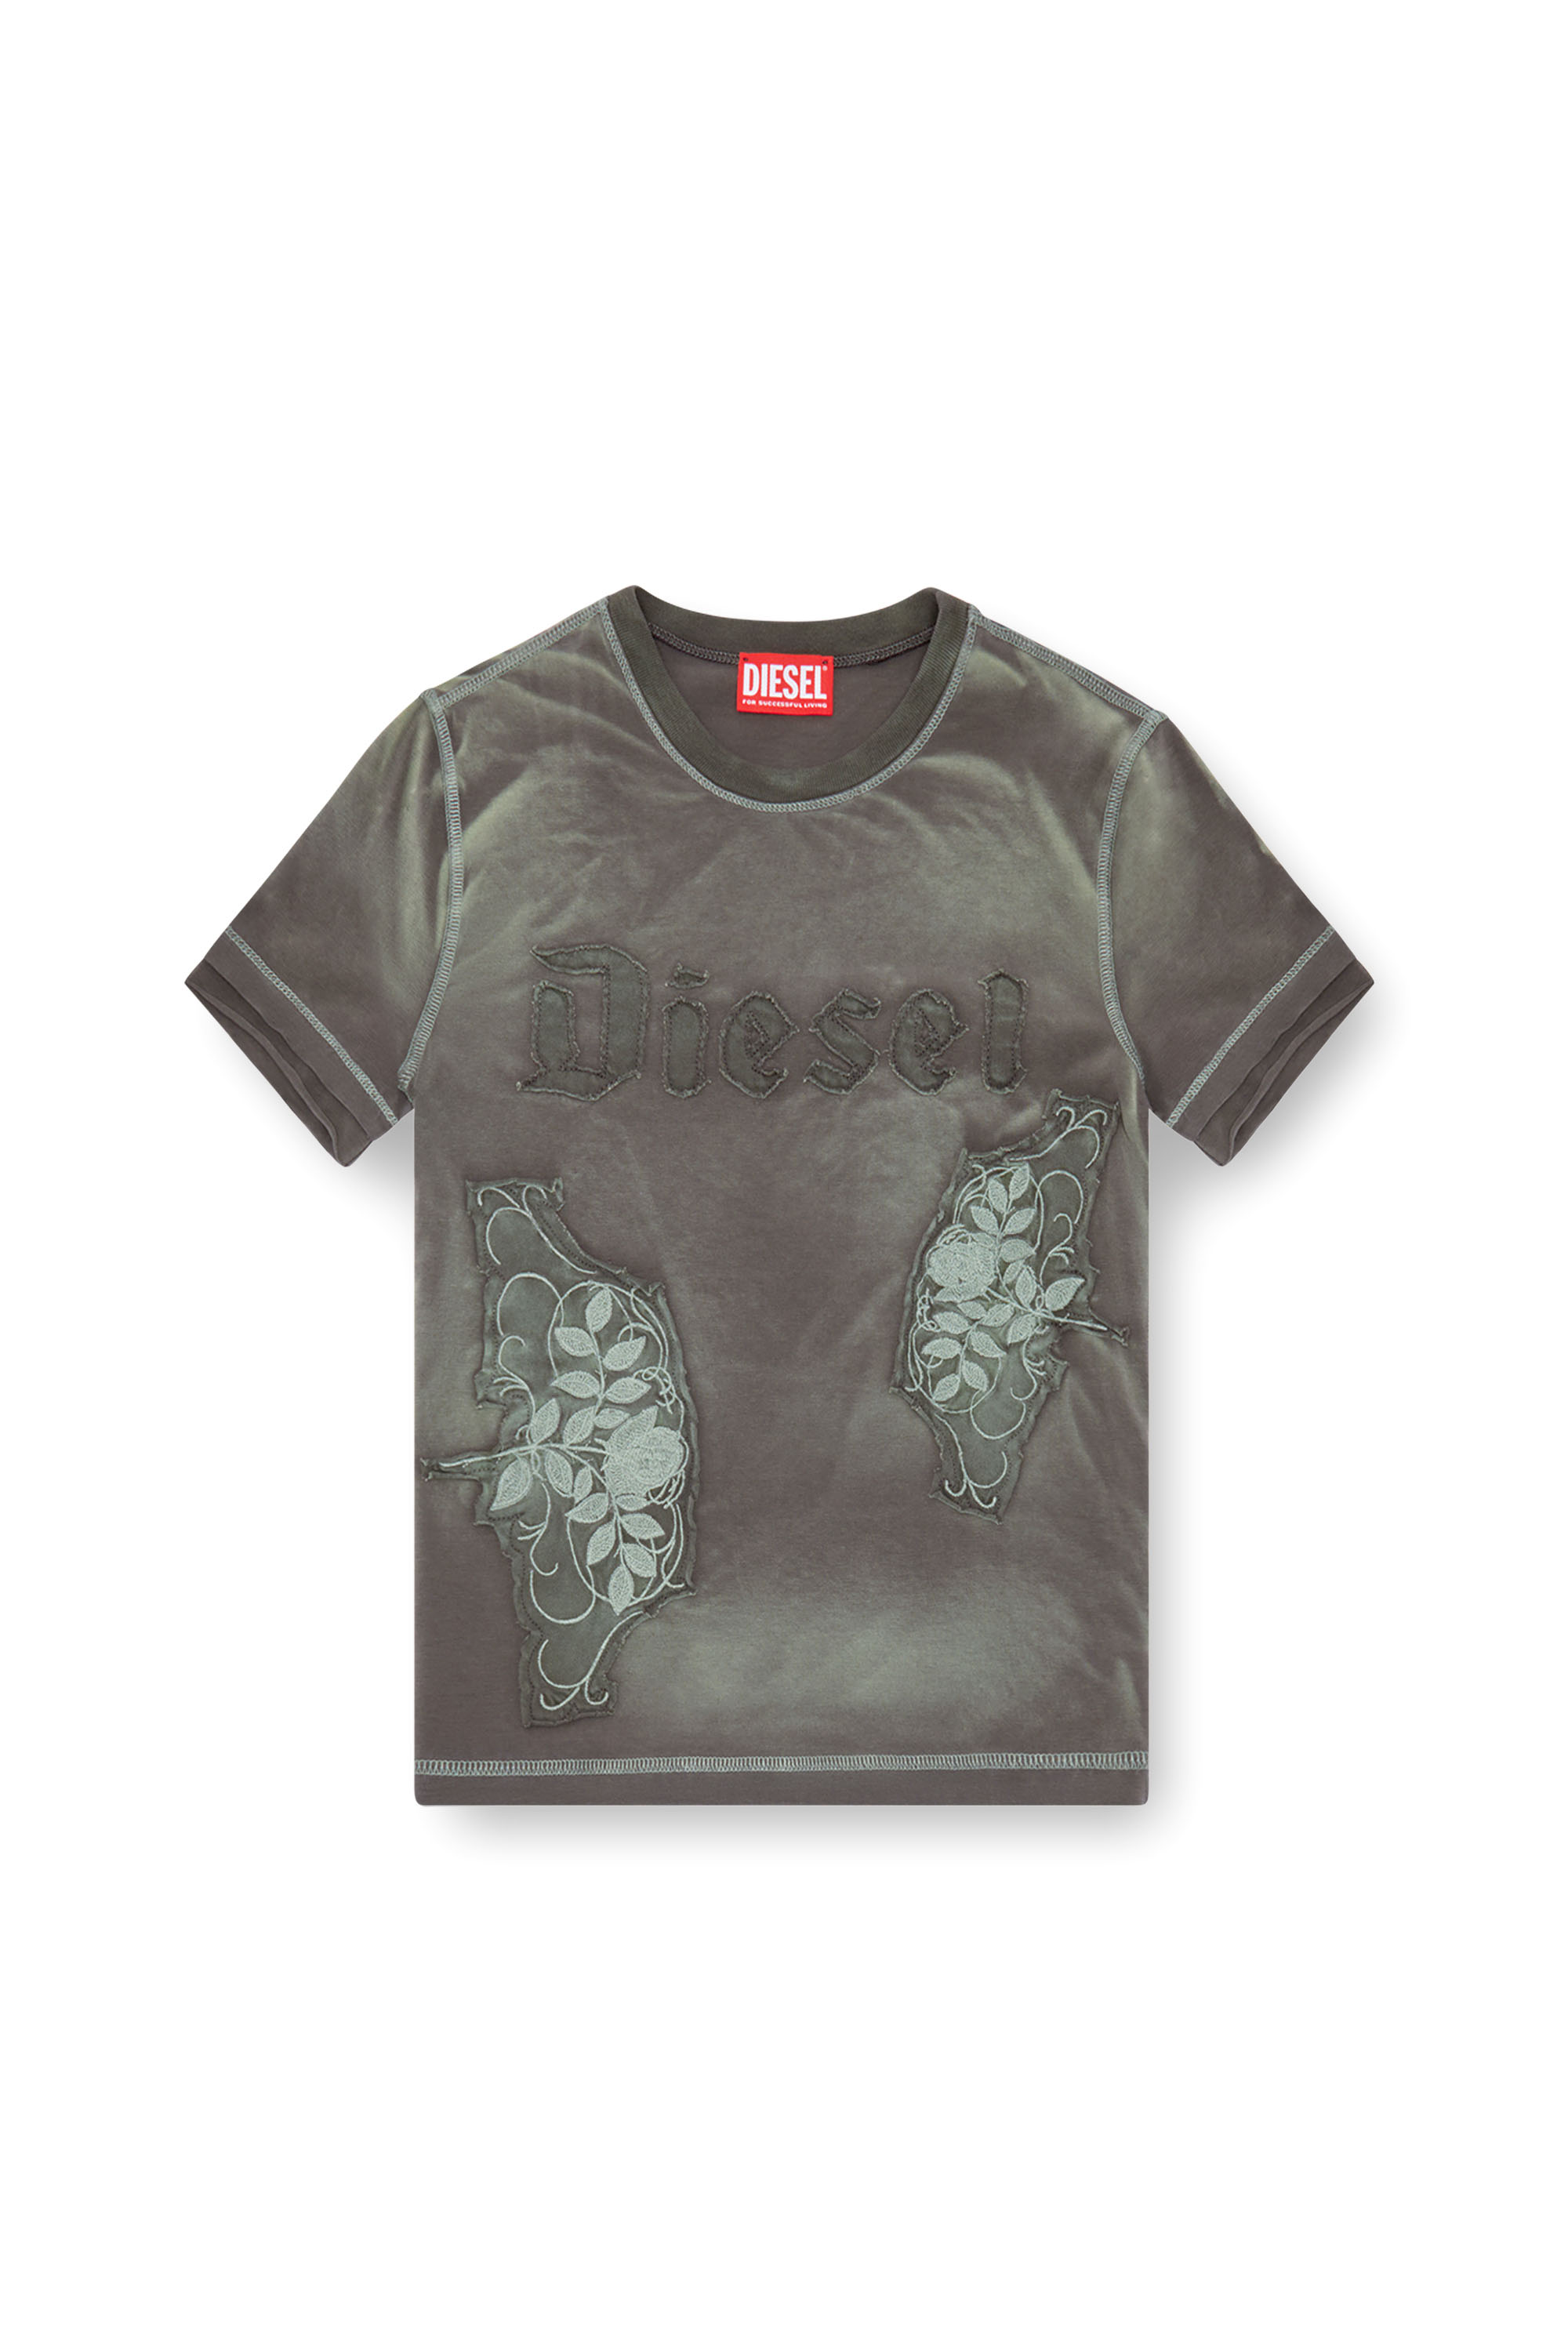 Diesel - T-UNCUT, Femme T-shirt avec empiècements fleuris brodés in Vert - Image 3